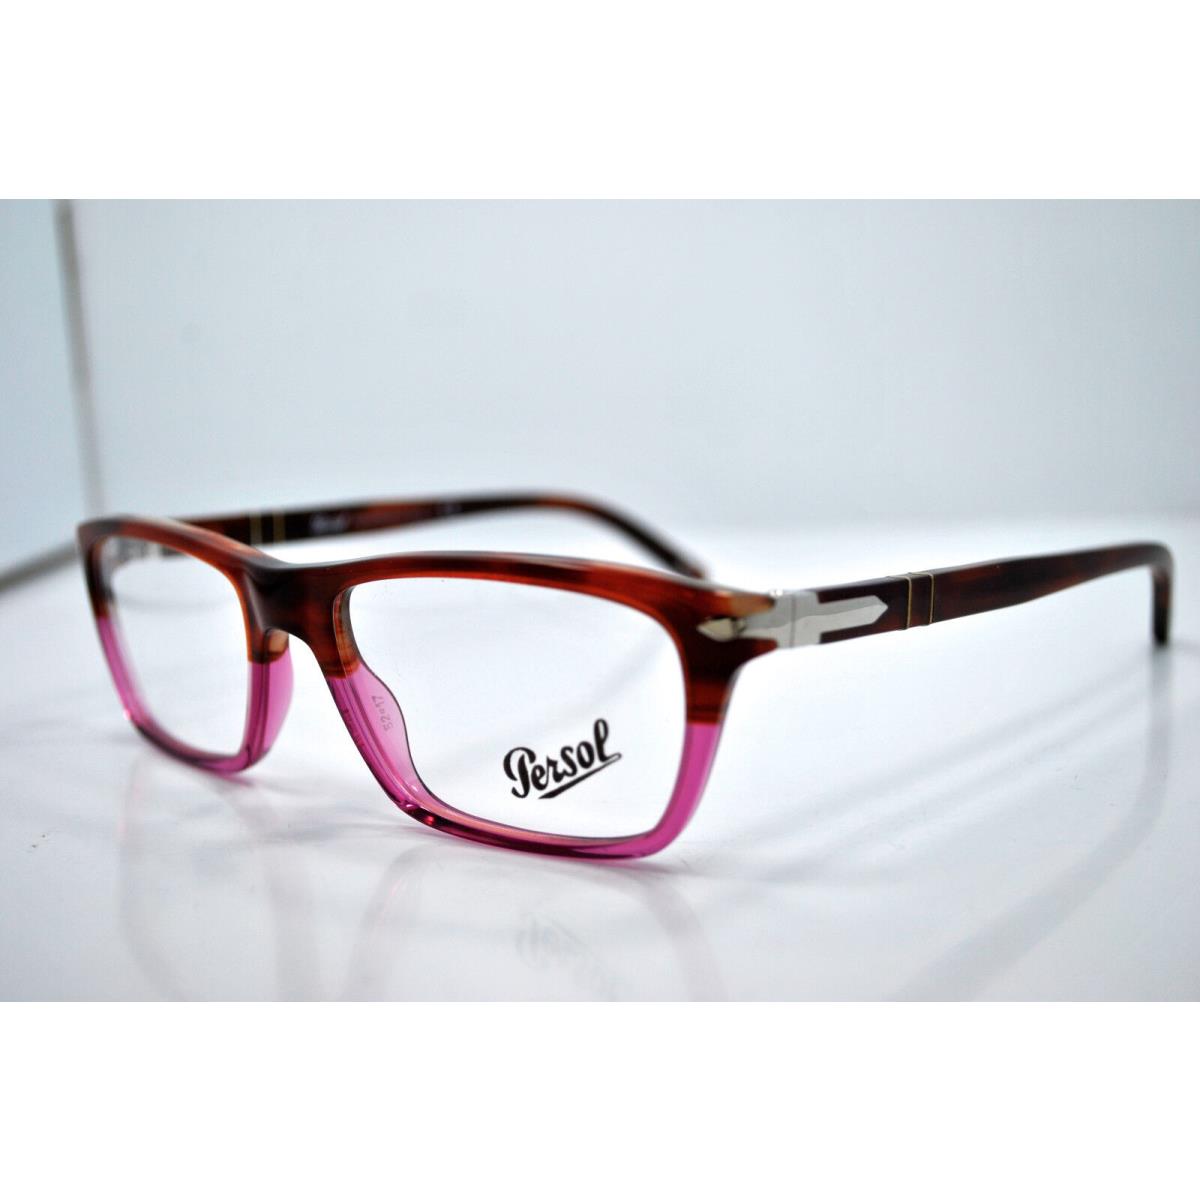 Persol 2969-V 912 Eyeglasses Frames